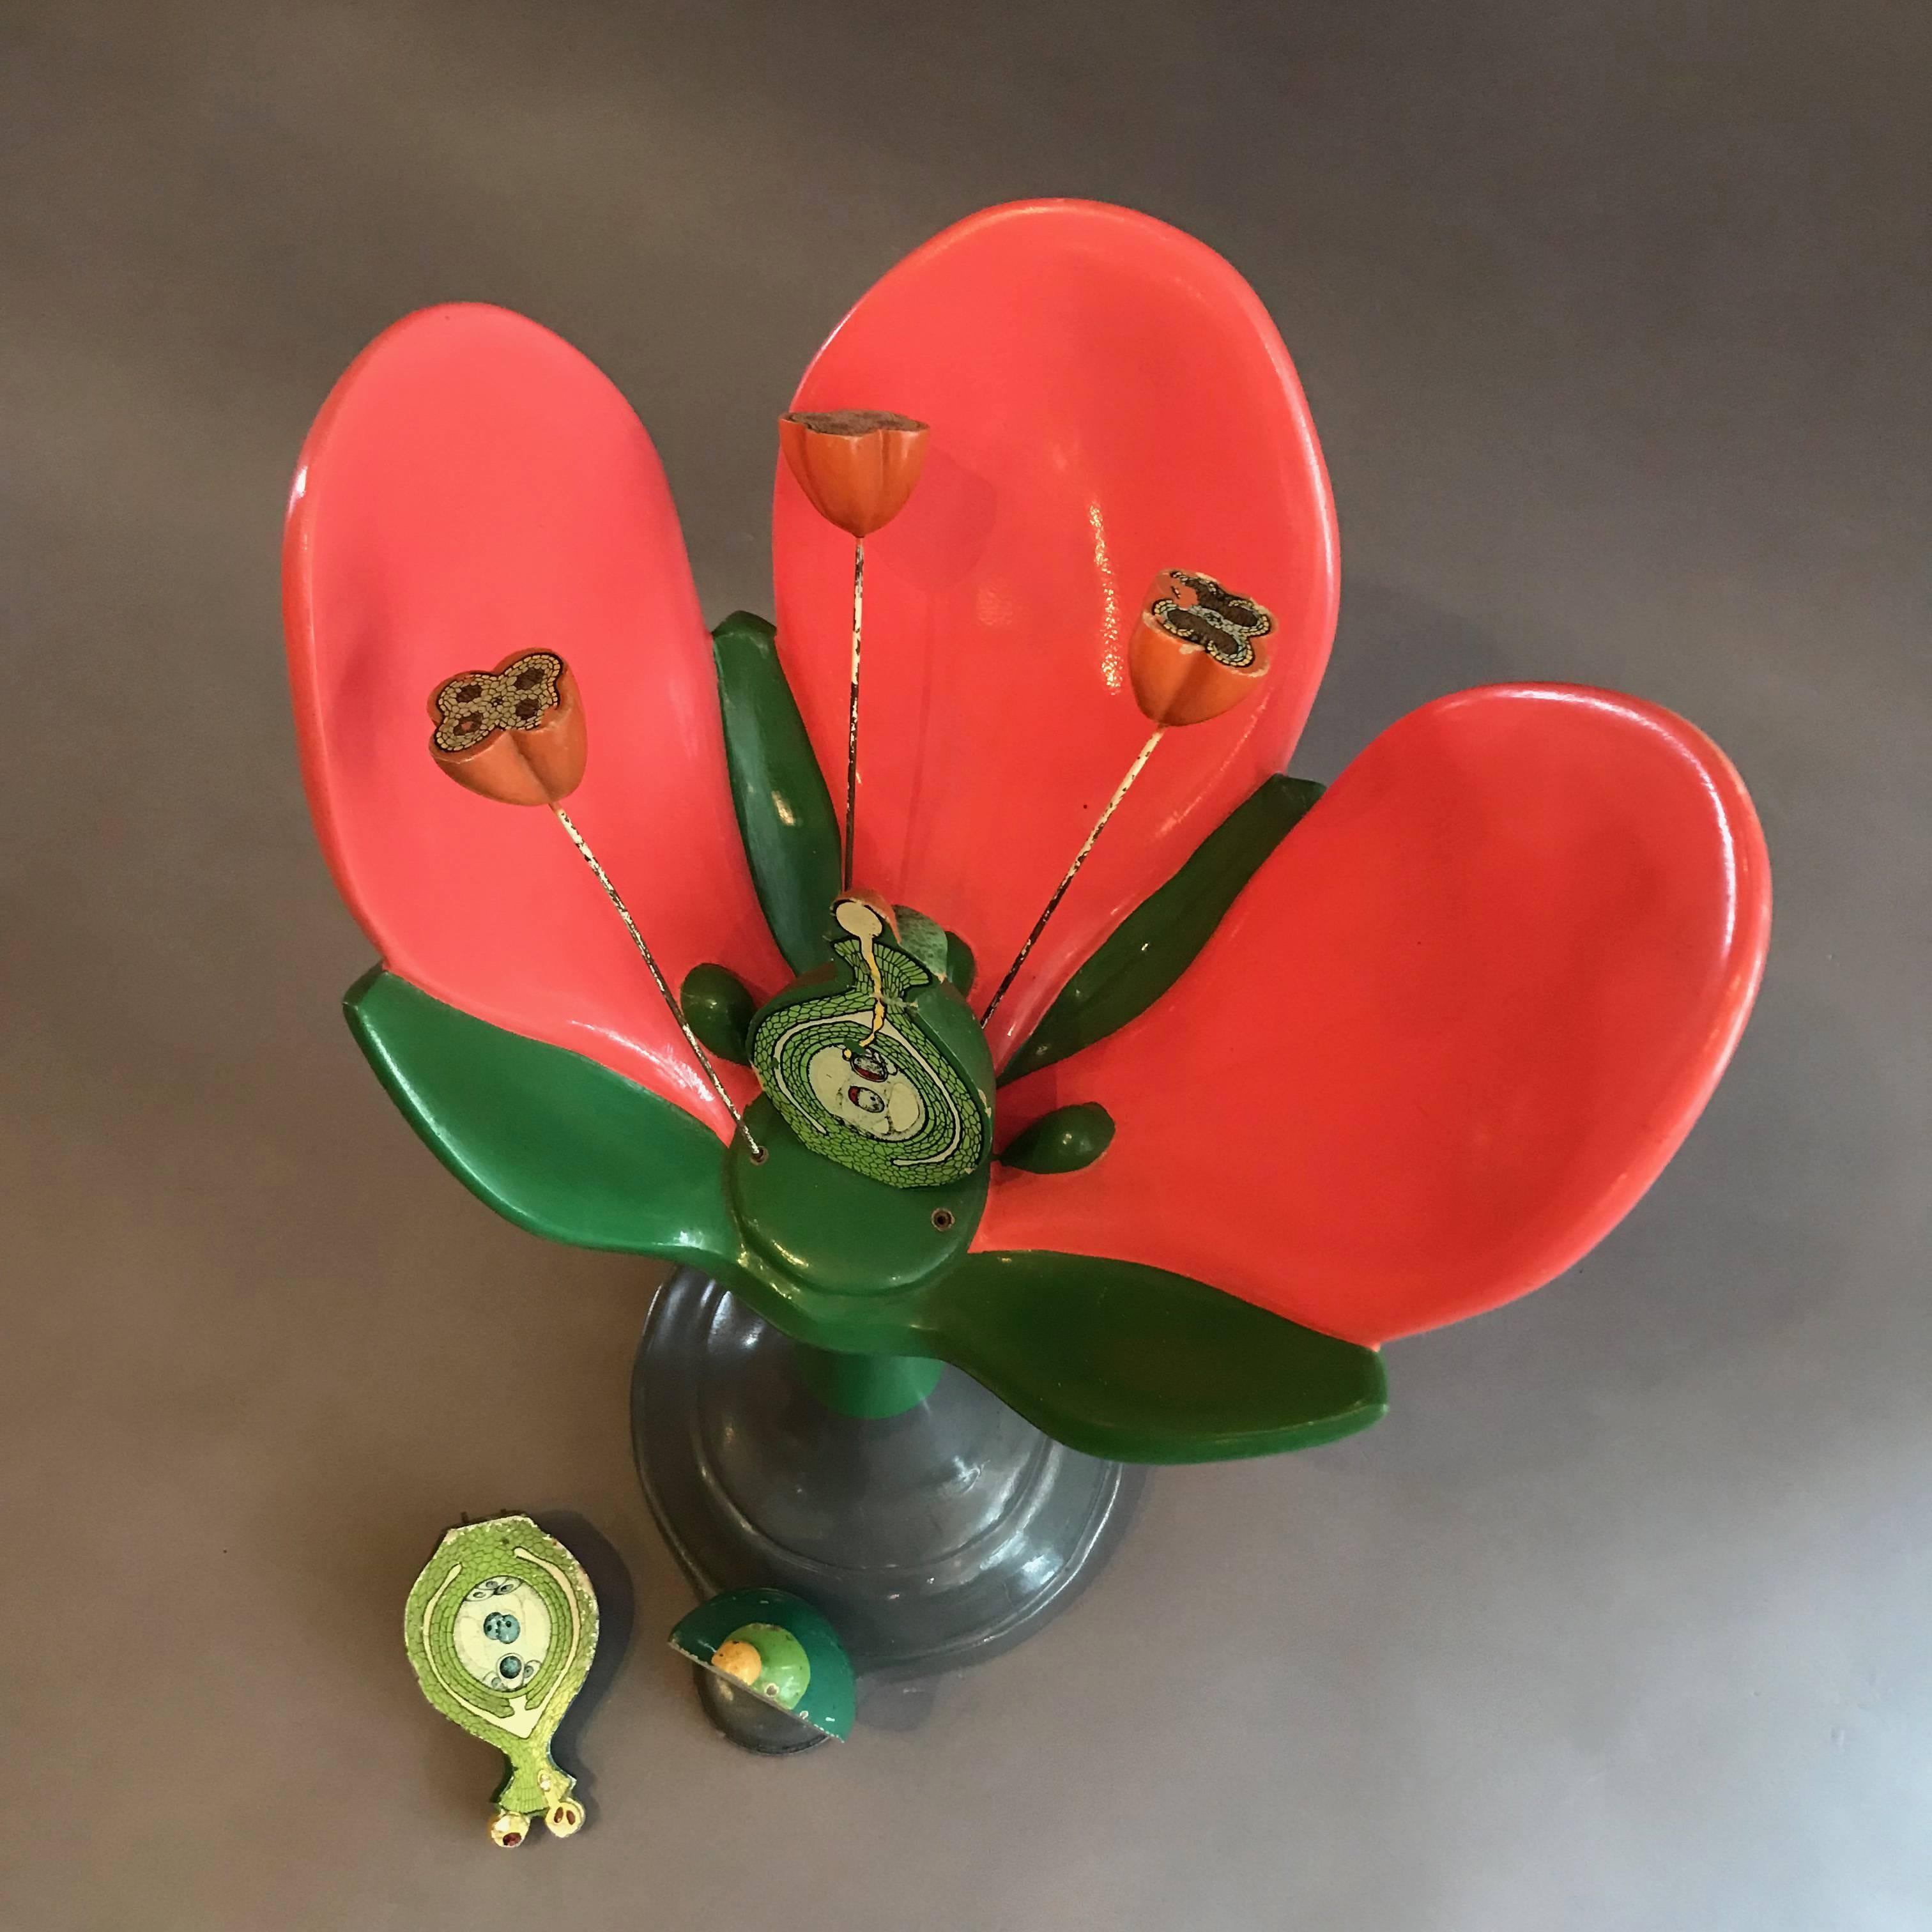 Mid-Century Modern Sargent-Welch Scientific Flower Botanical Model